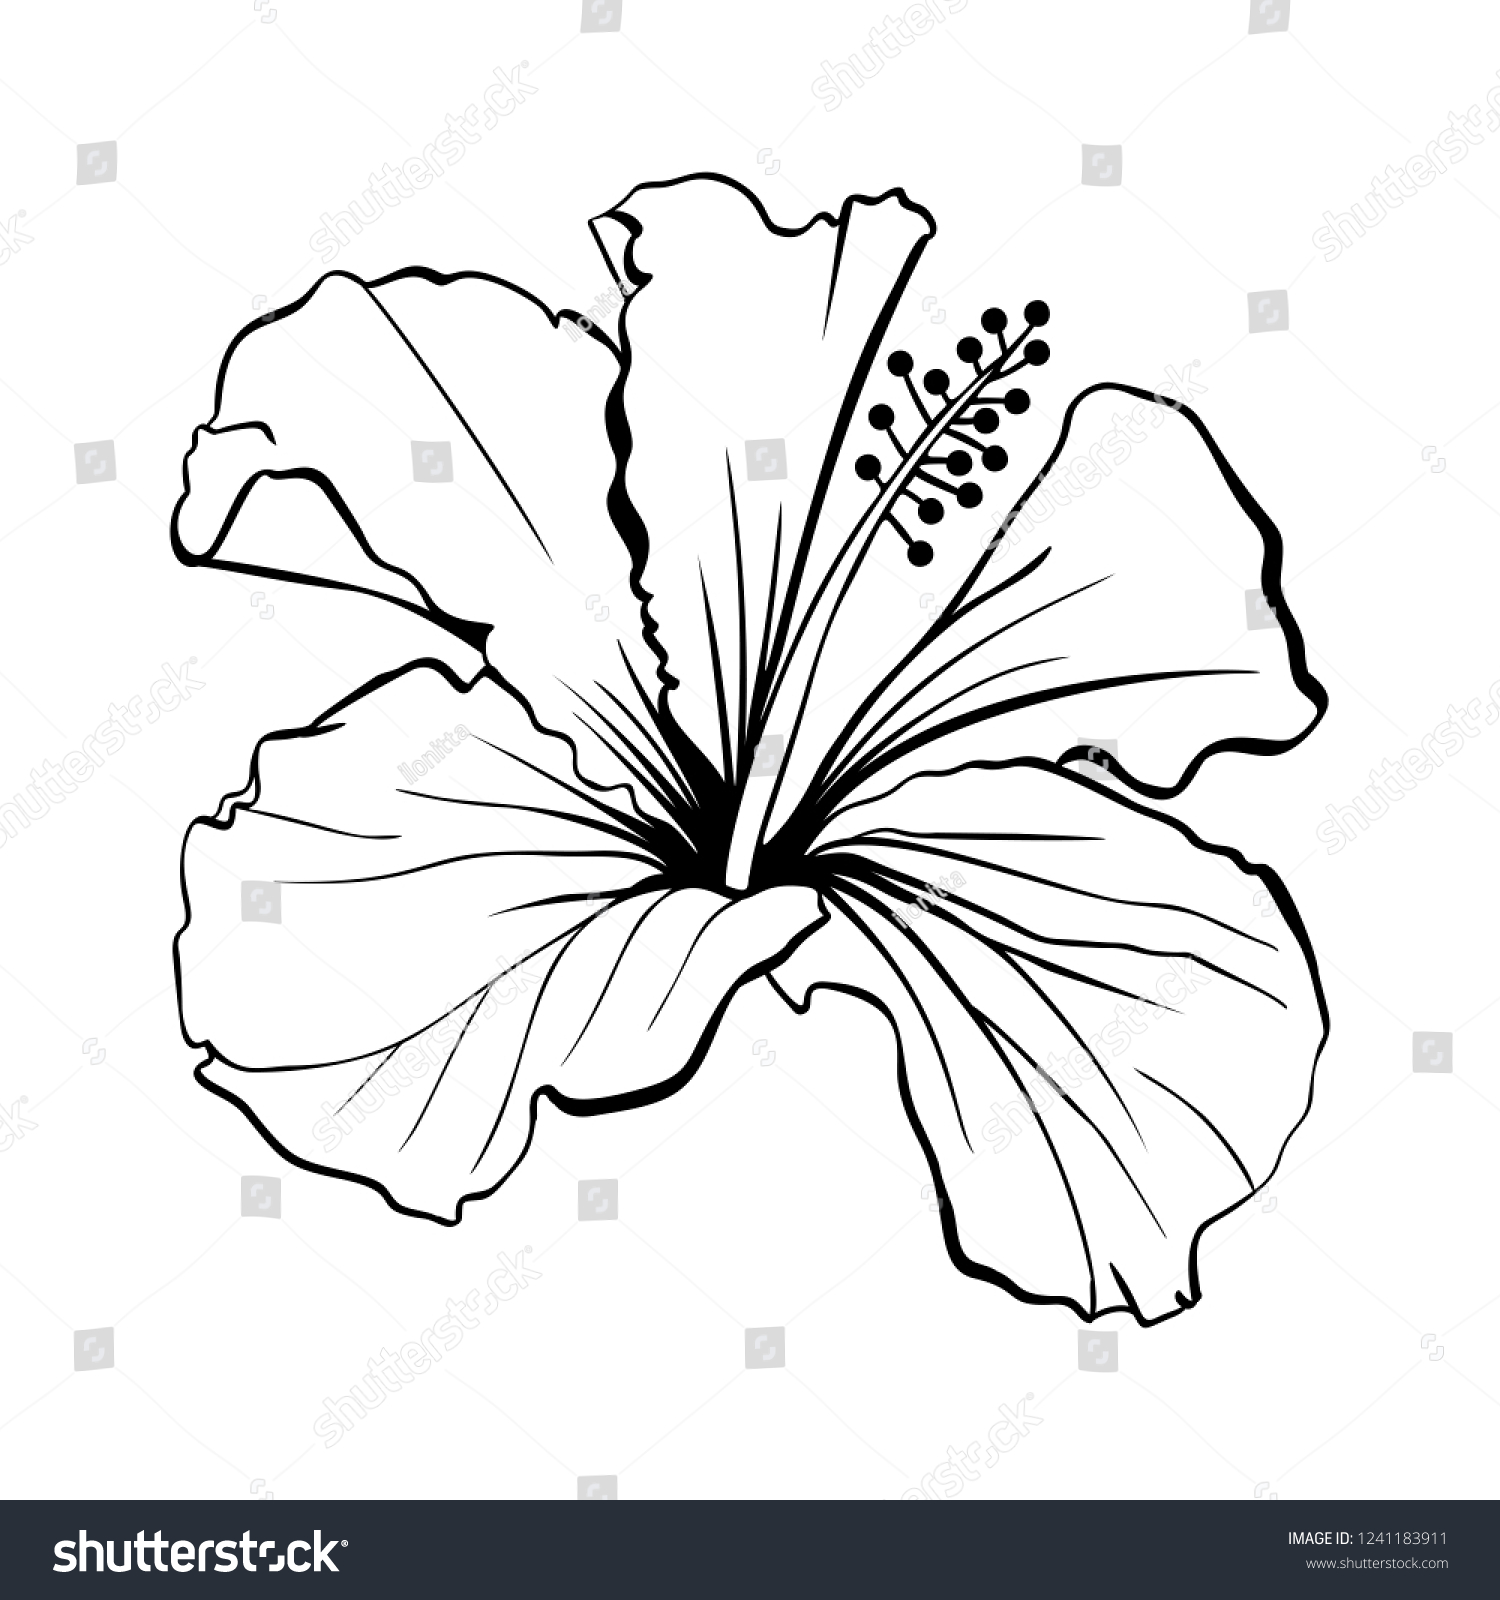 ハワイハイビスカス レーザーカットベクター画像 香りの輪郭の花 モロー シェニーズ ローズ 白黒植物花びらを持つ植物 熱帯のカルカードまたはビサップハーブティー 深紅の花 のベクター画像素材 ロイヤリティ フリー